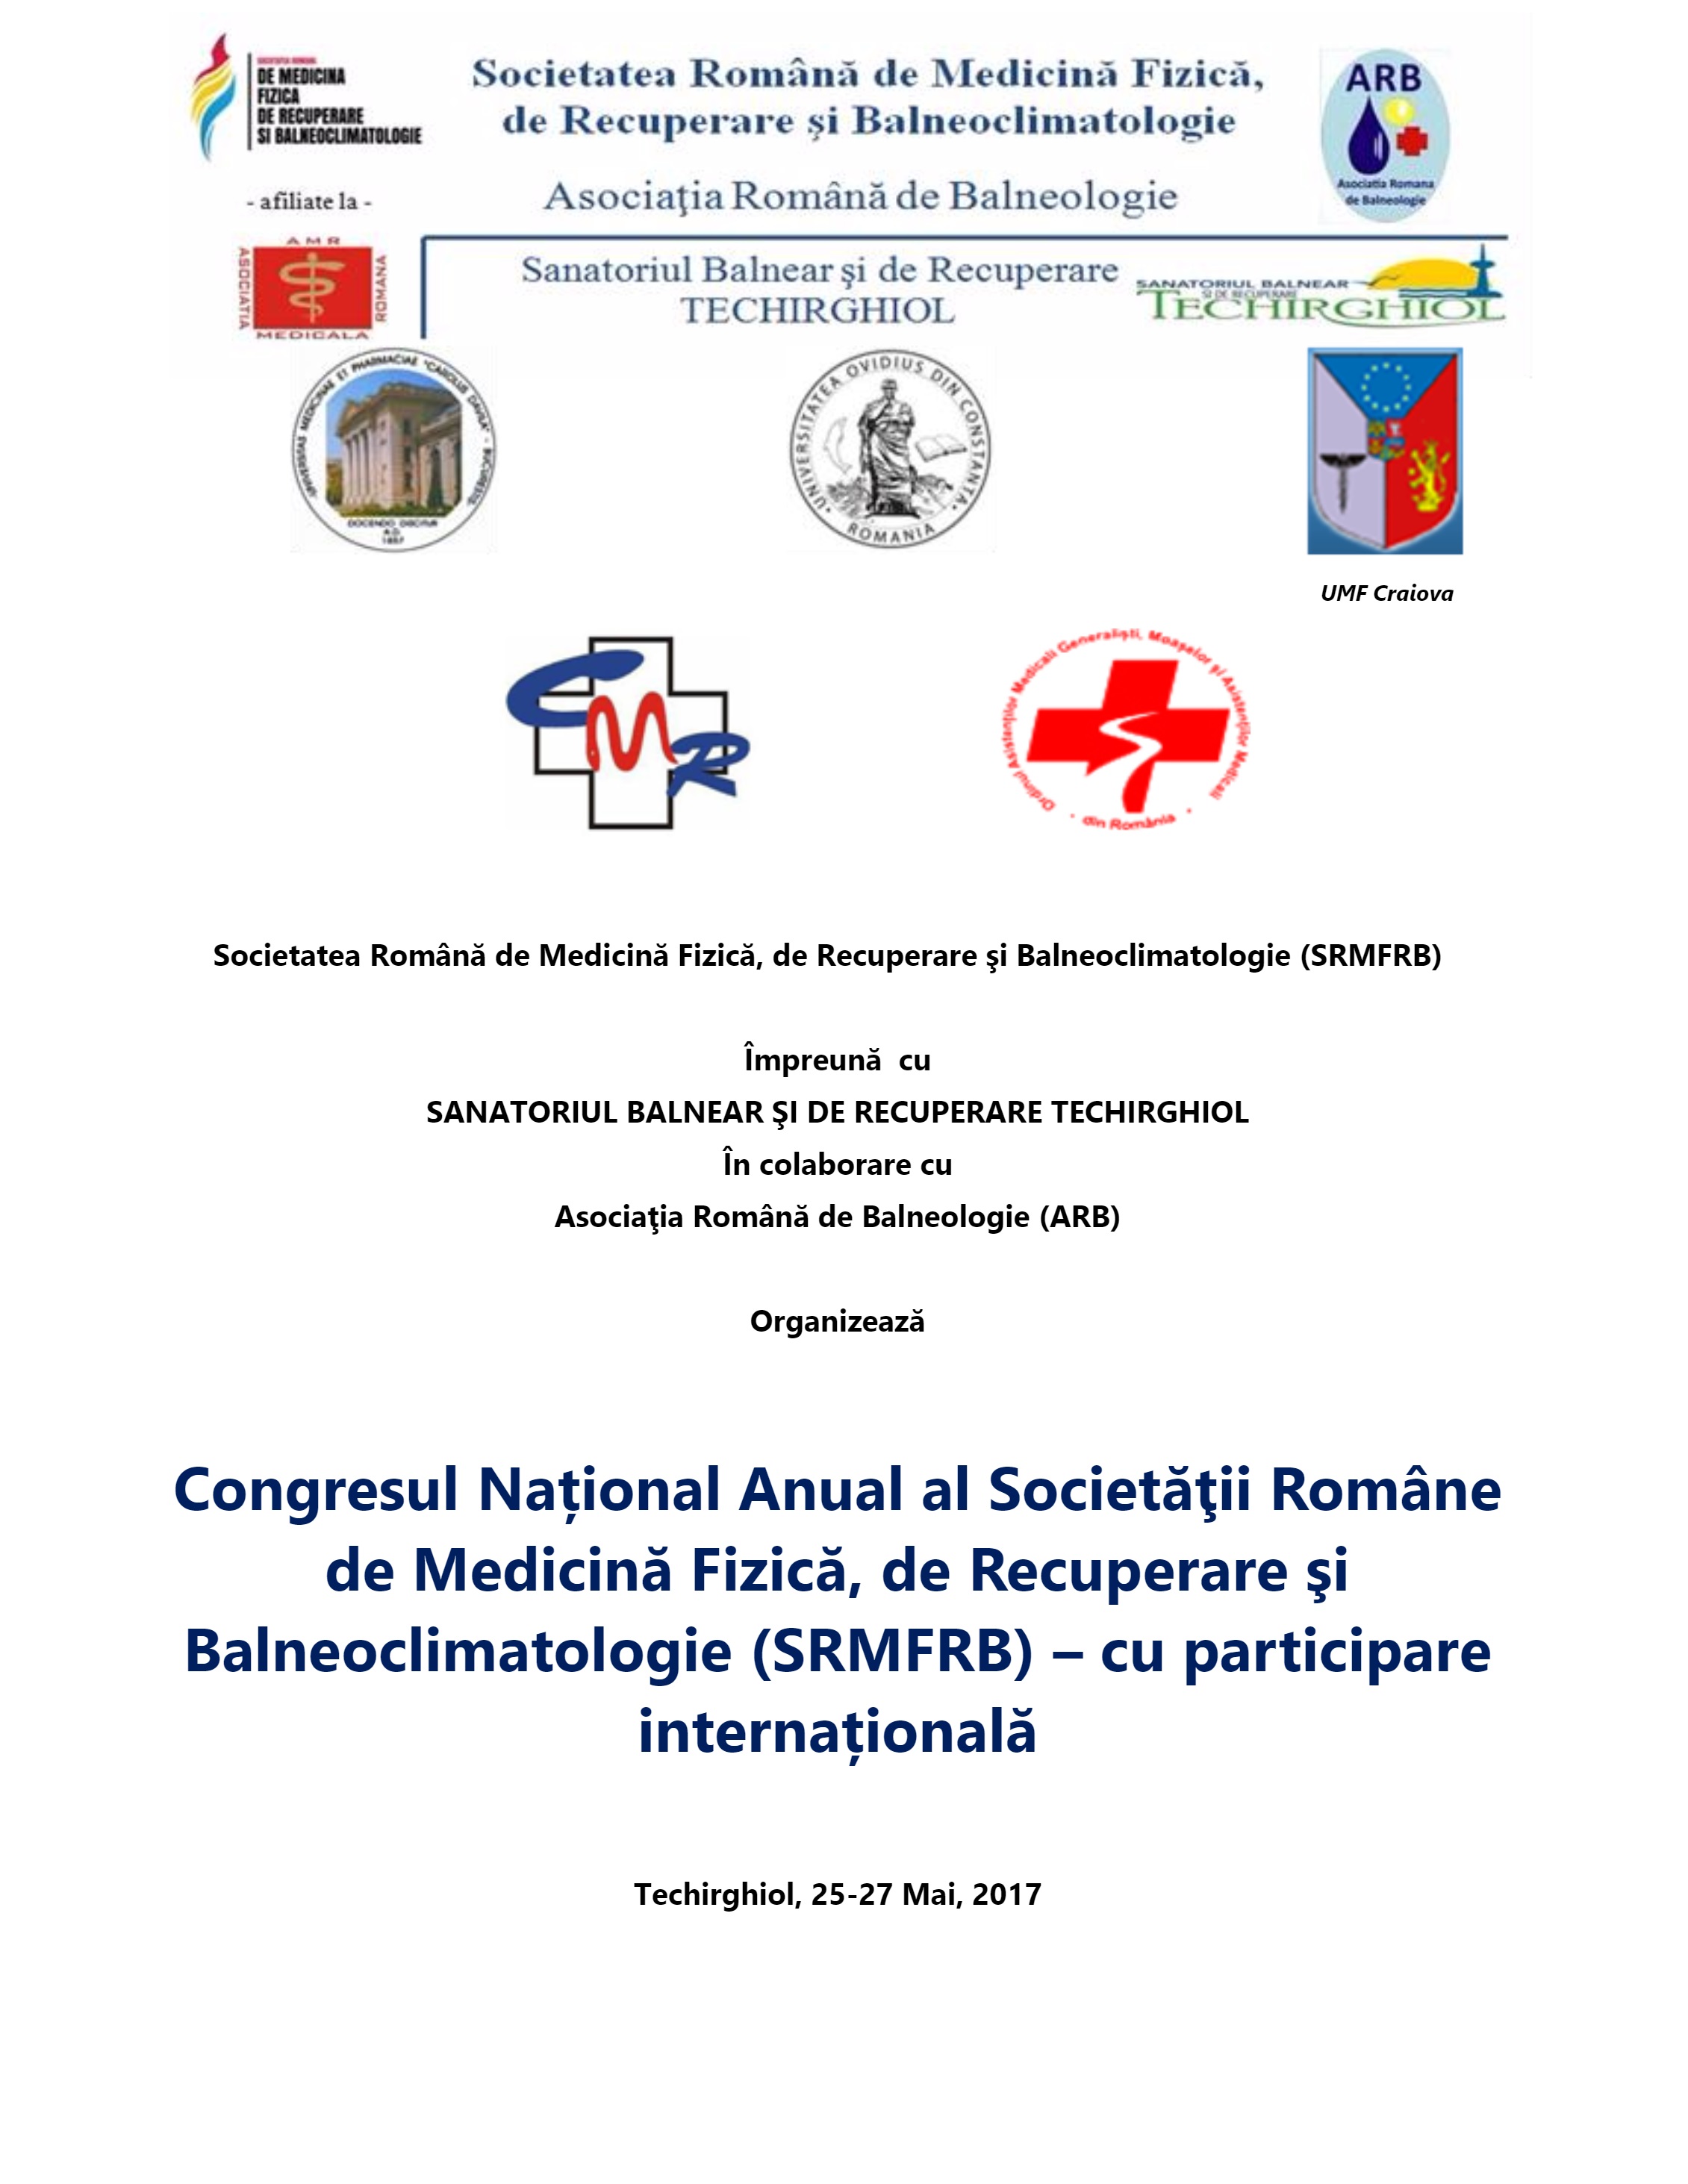 Congresul Național Anual al Societății Române de Medicină Fizică, de Recuperare și Balneoclimatologie (SRMFRB) - cu participare internațională